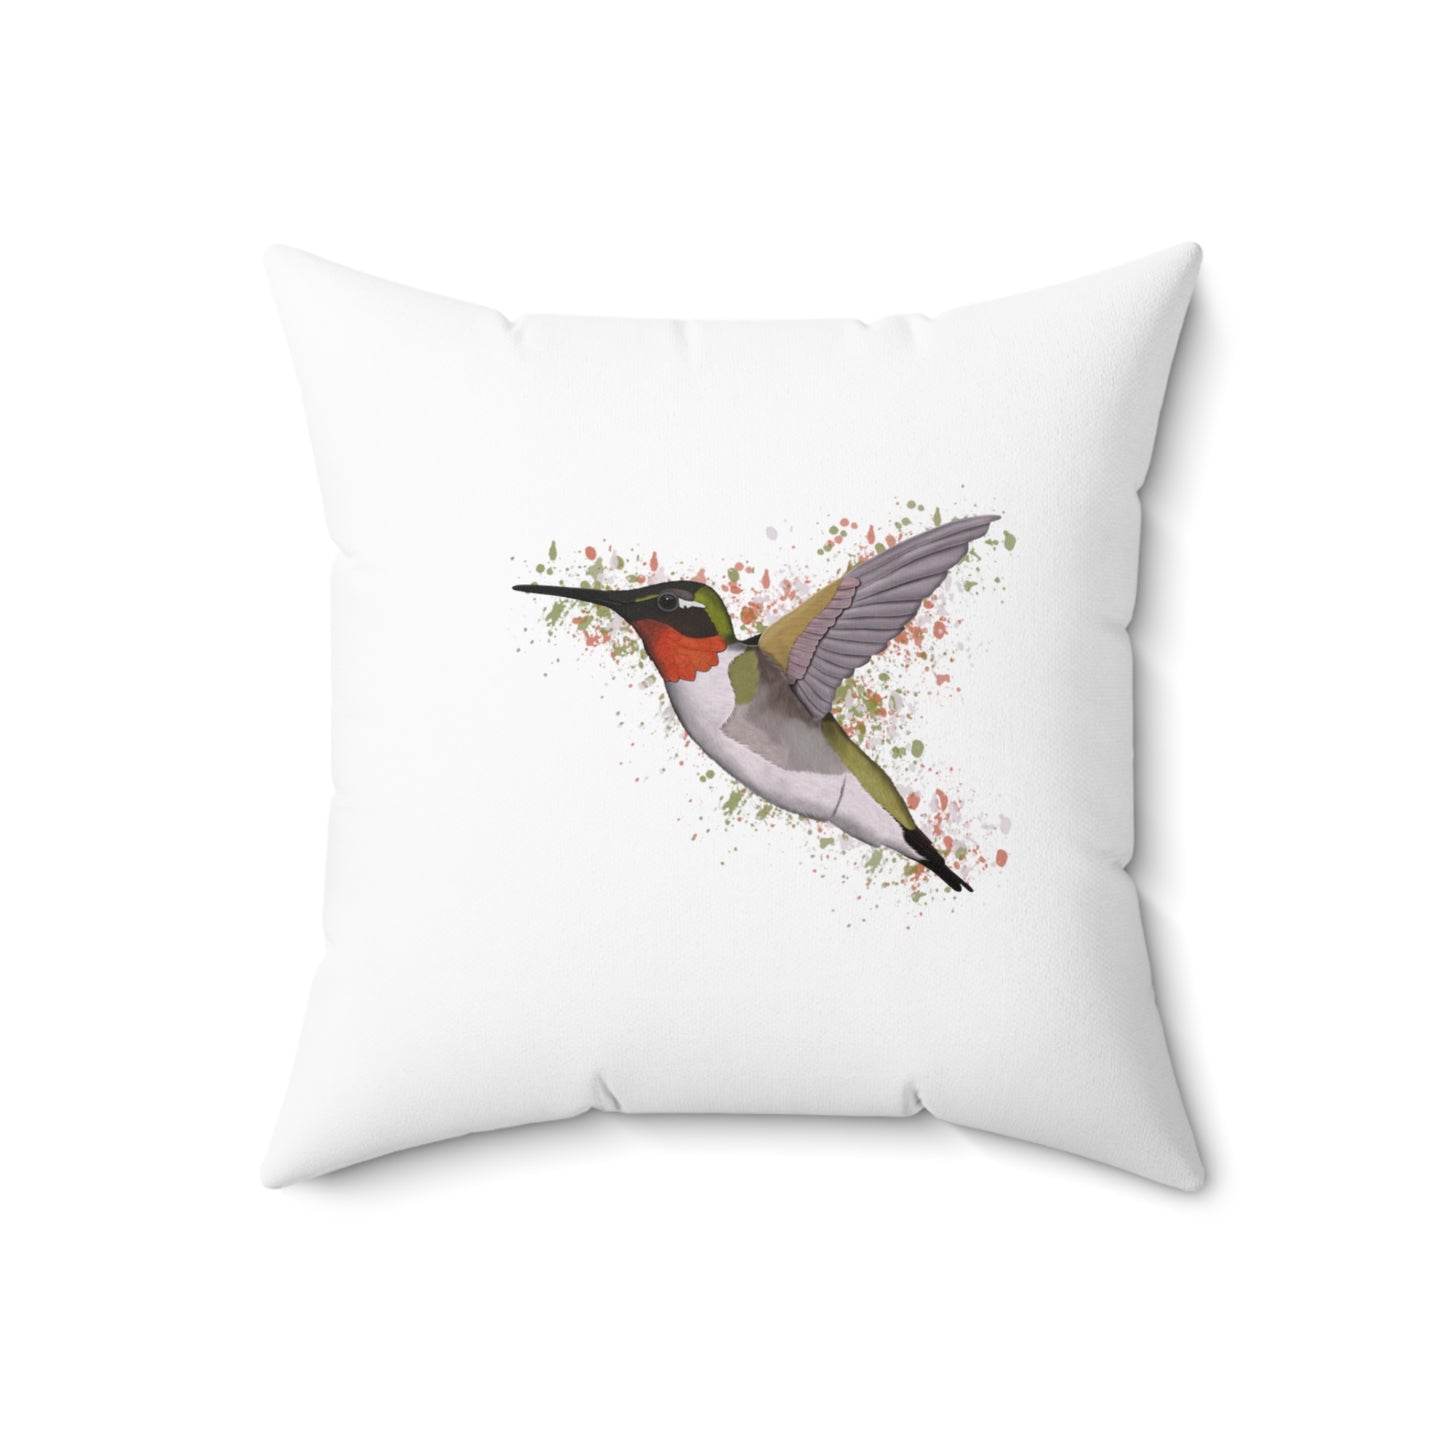 Hummingbird Bird Throw Pillow 16"x16" White